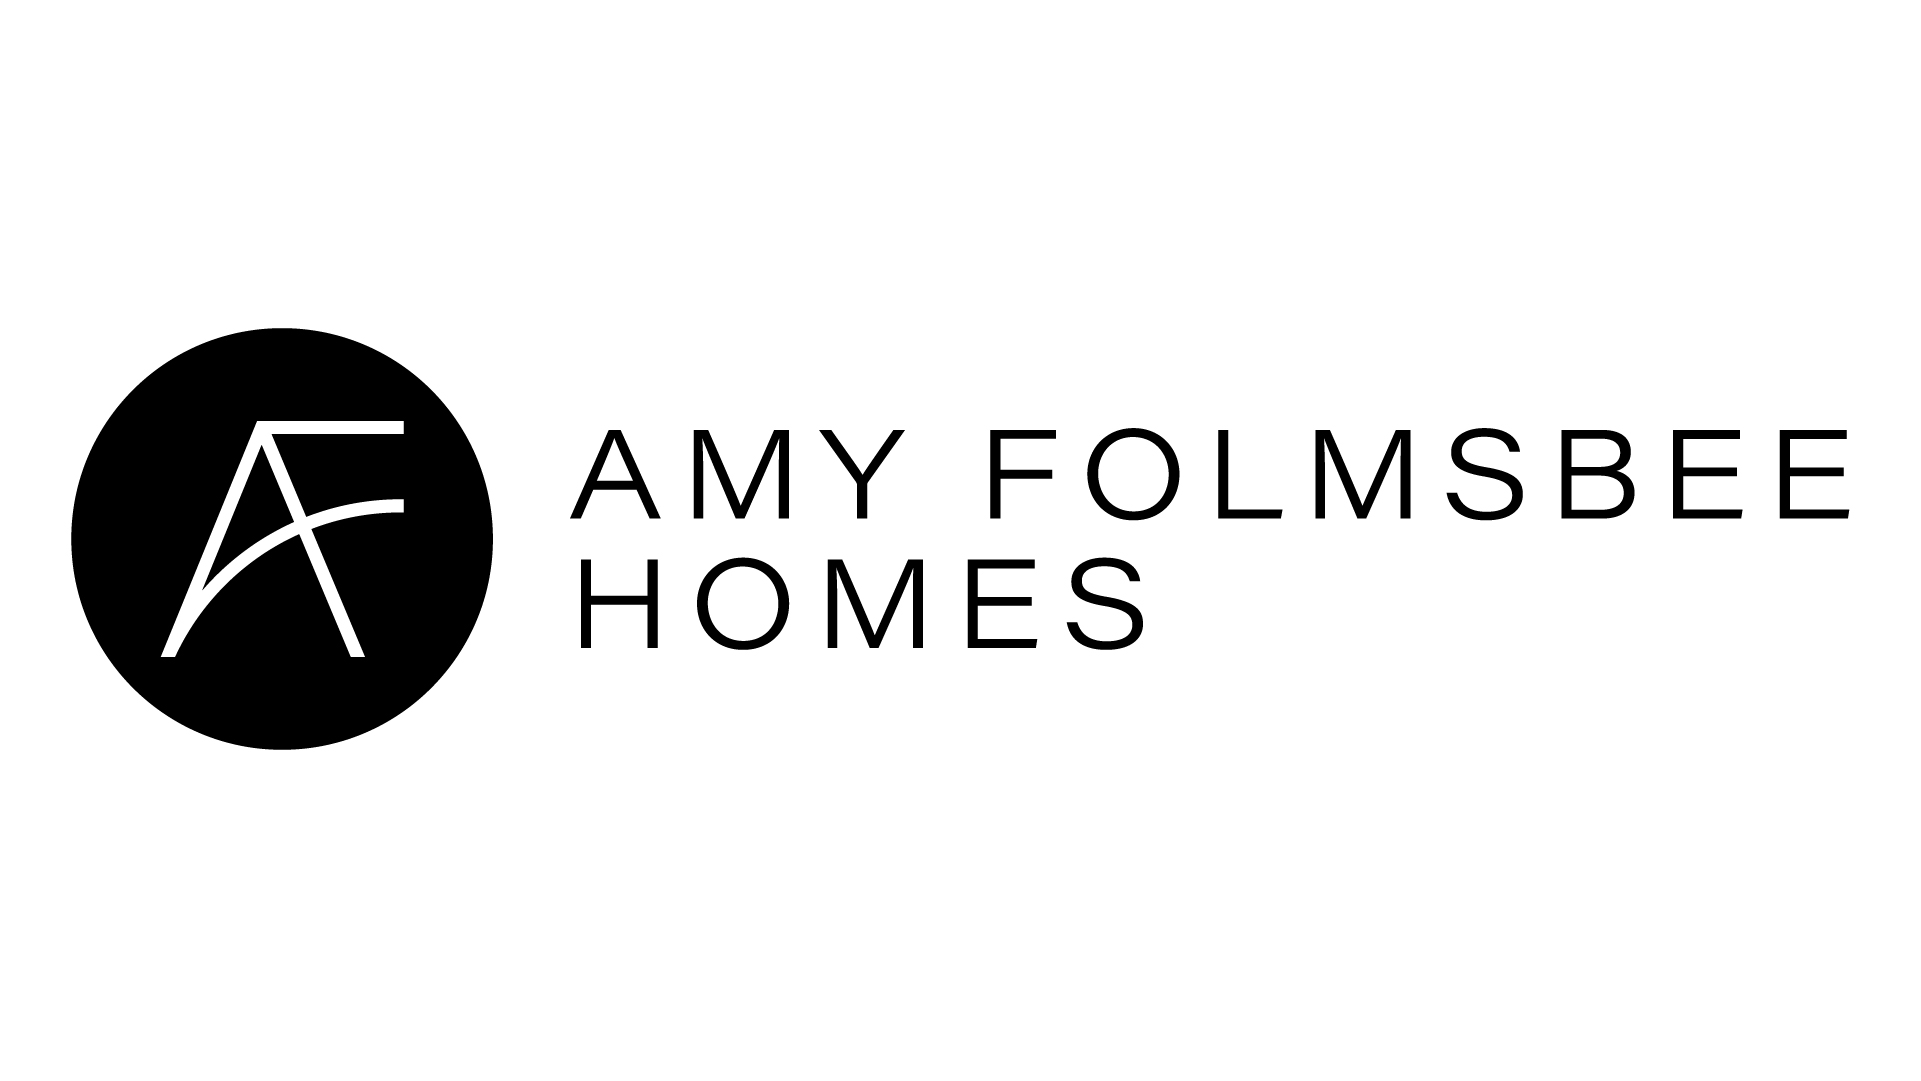 A text banner describing Amy Folmsbee